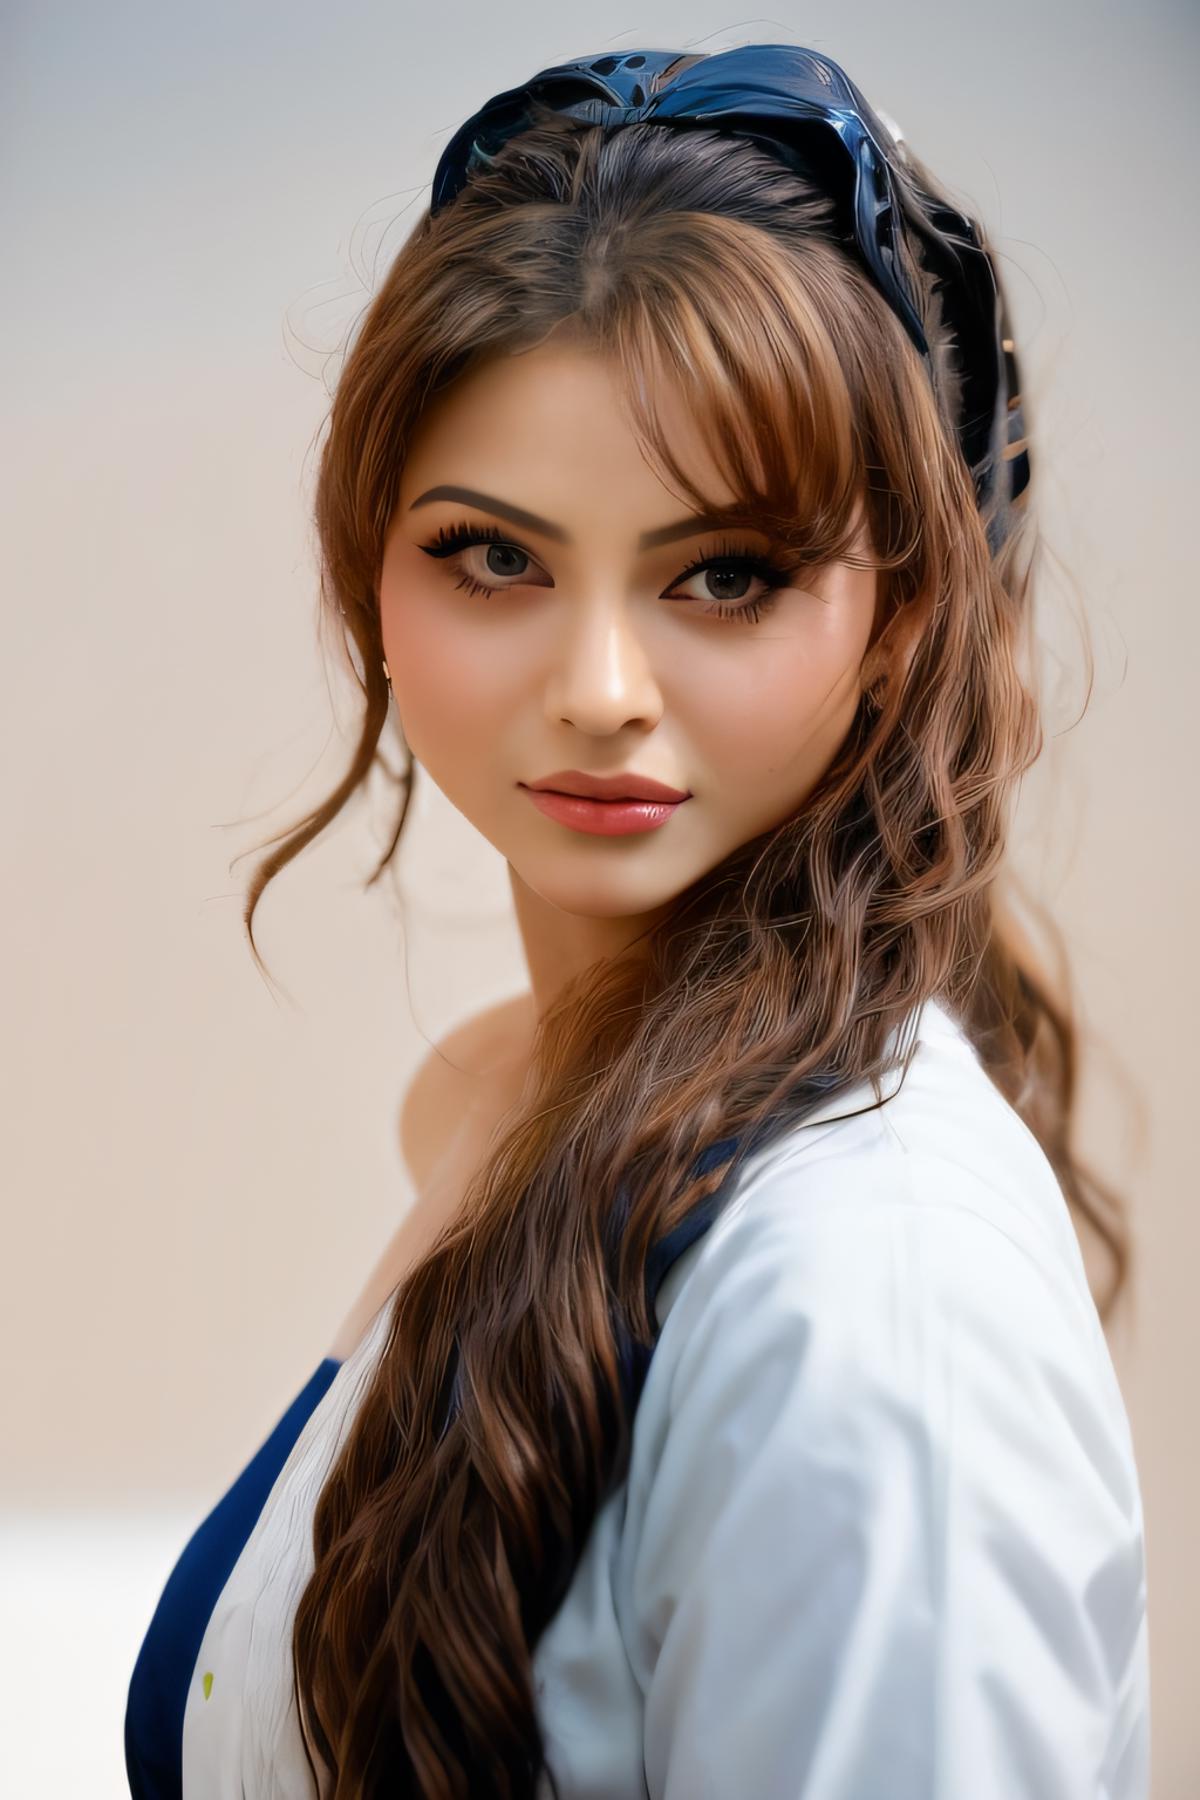 Urvashi Rautela (Indian actress) image by NK_ArtFlow